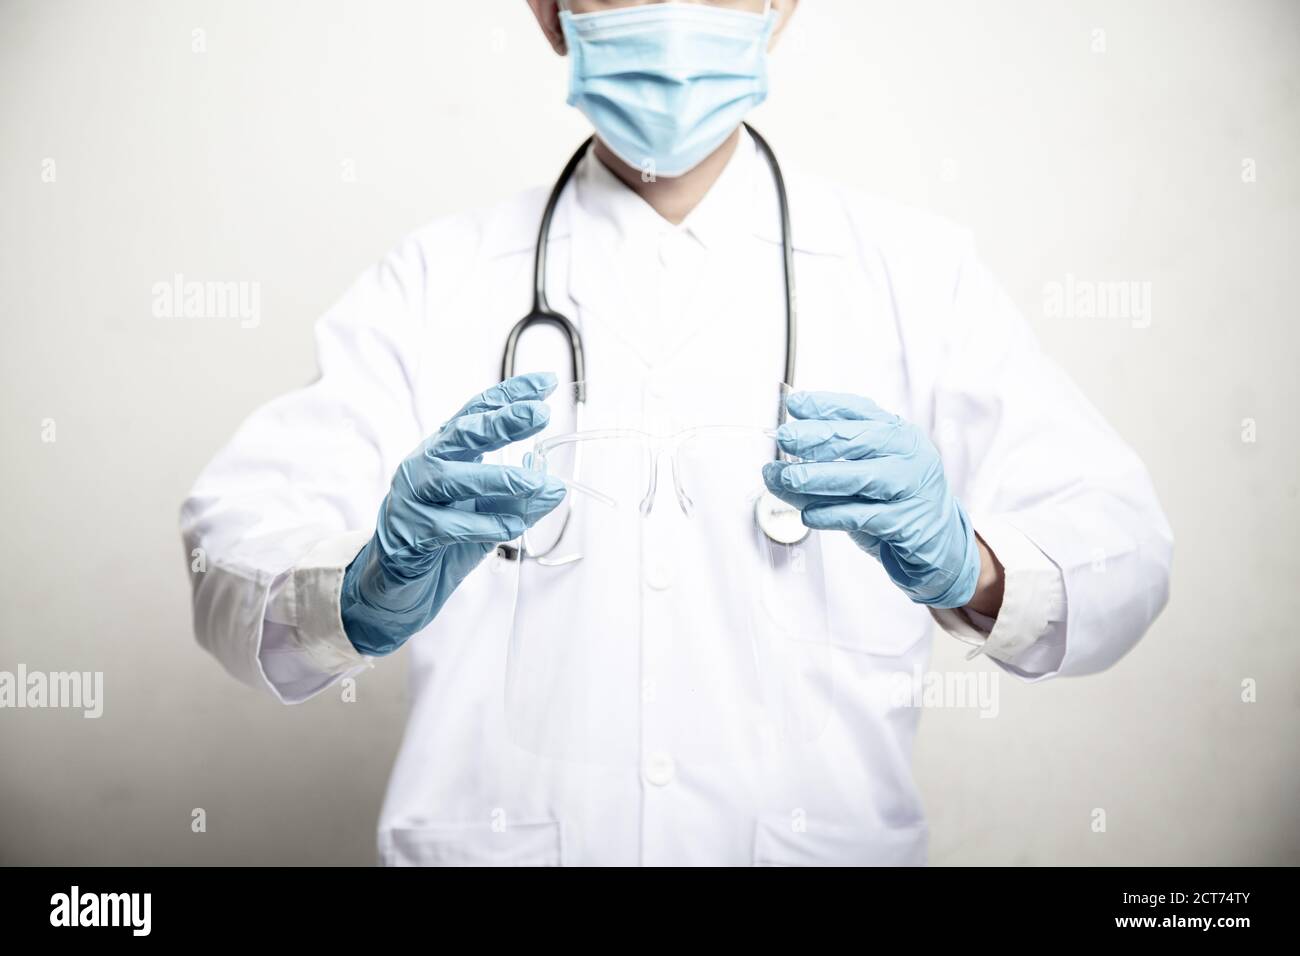 Doktor Mann auf Unschärfe Krankenhaus Labor Panorama blauen Hintergrund. COVID-19 Virus Epidemie Ausbruch zu Coronavirus Pandemie Krankheit globale Rezession wi Stockfoto